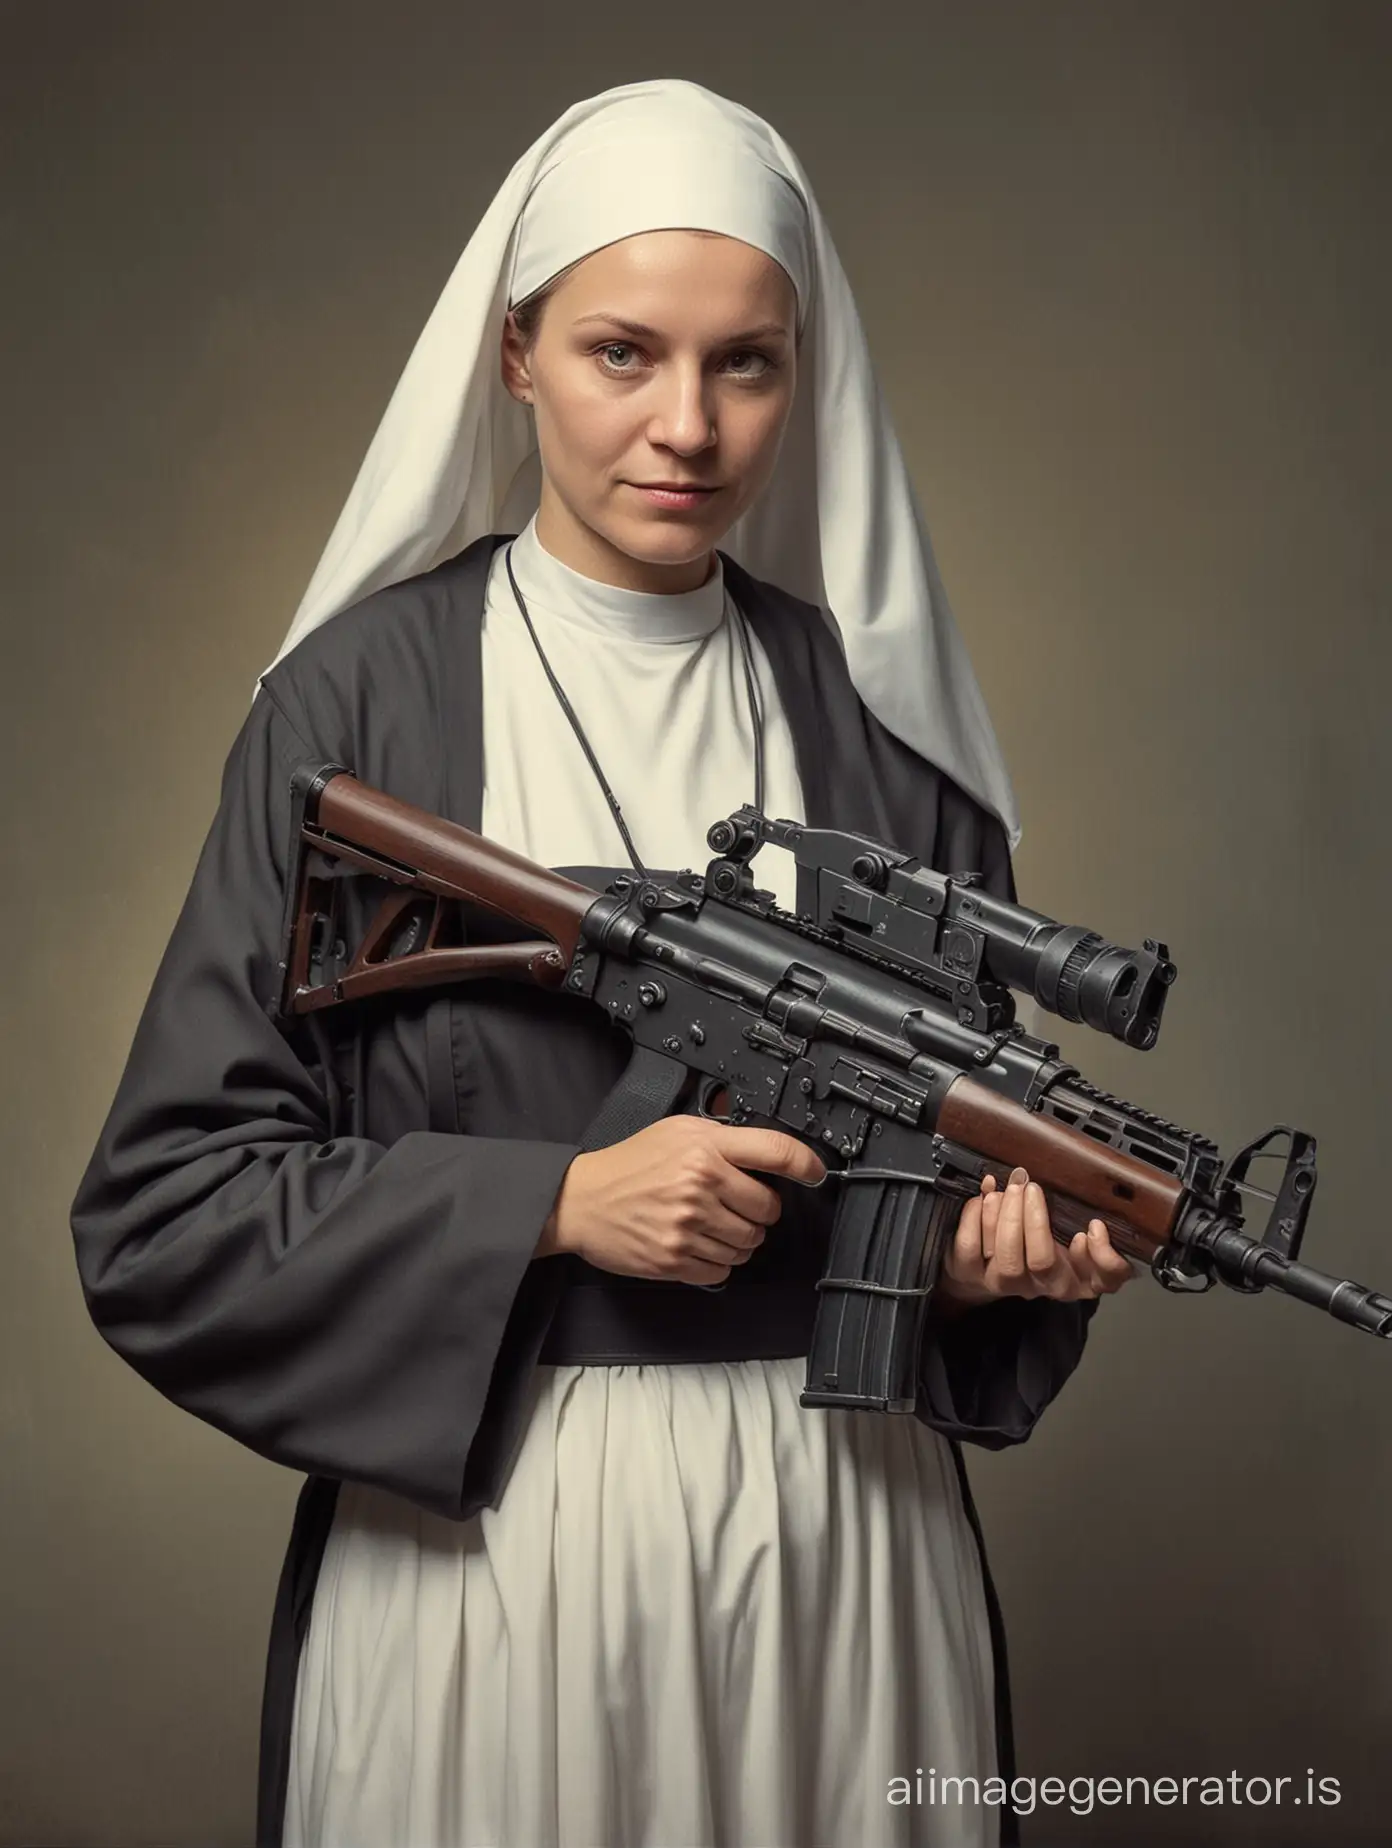 a nun with a submachine gun